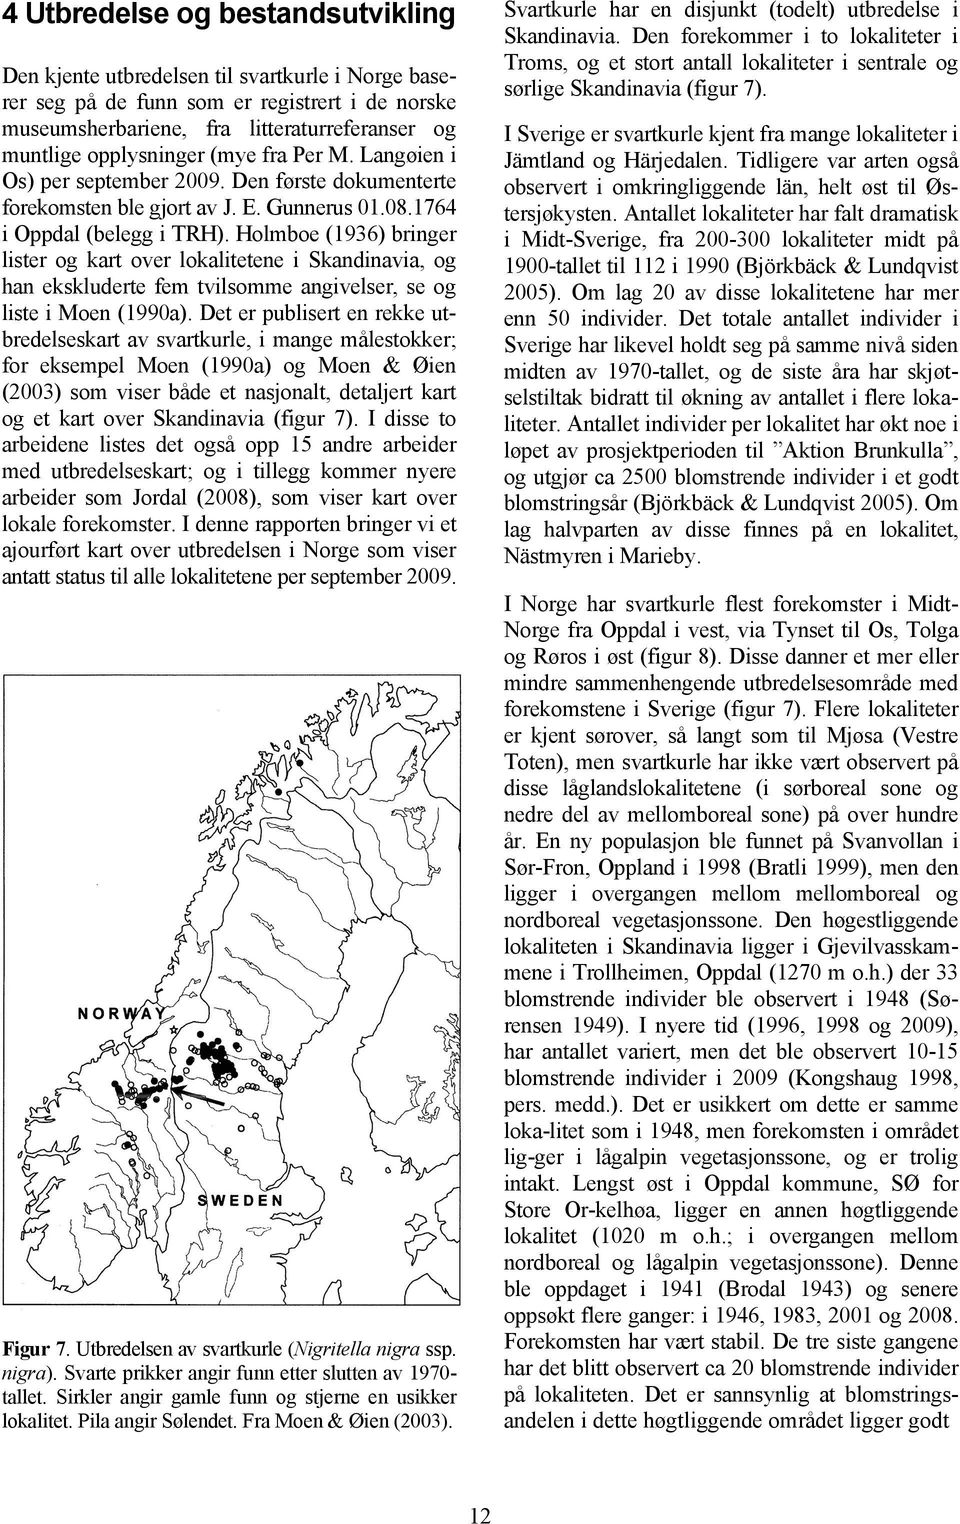 Holmboe (1936) bringer lister og kart over lokalitetene i Skandinavia, og han ekskluderte fem tvilsomme angivelser, se og liste i Moen (1990a).